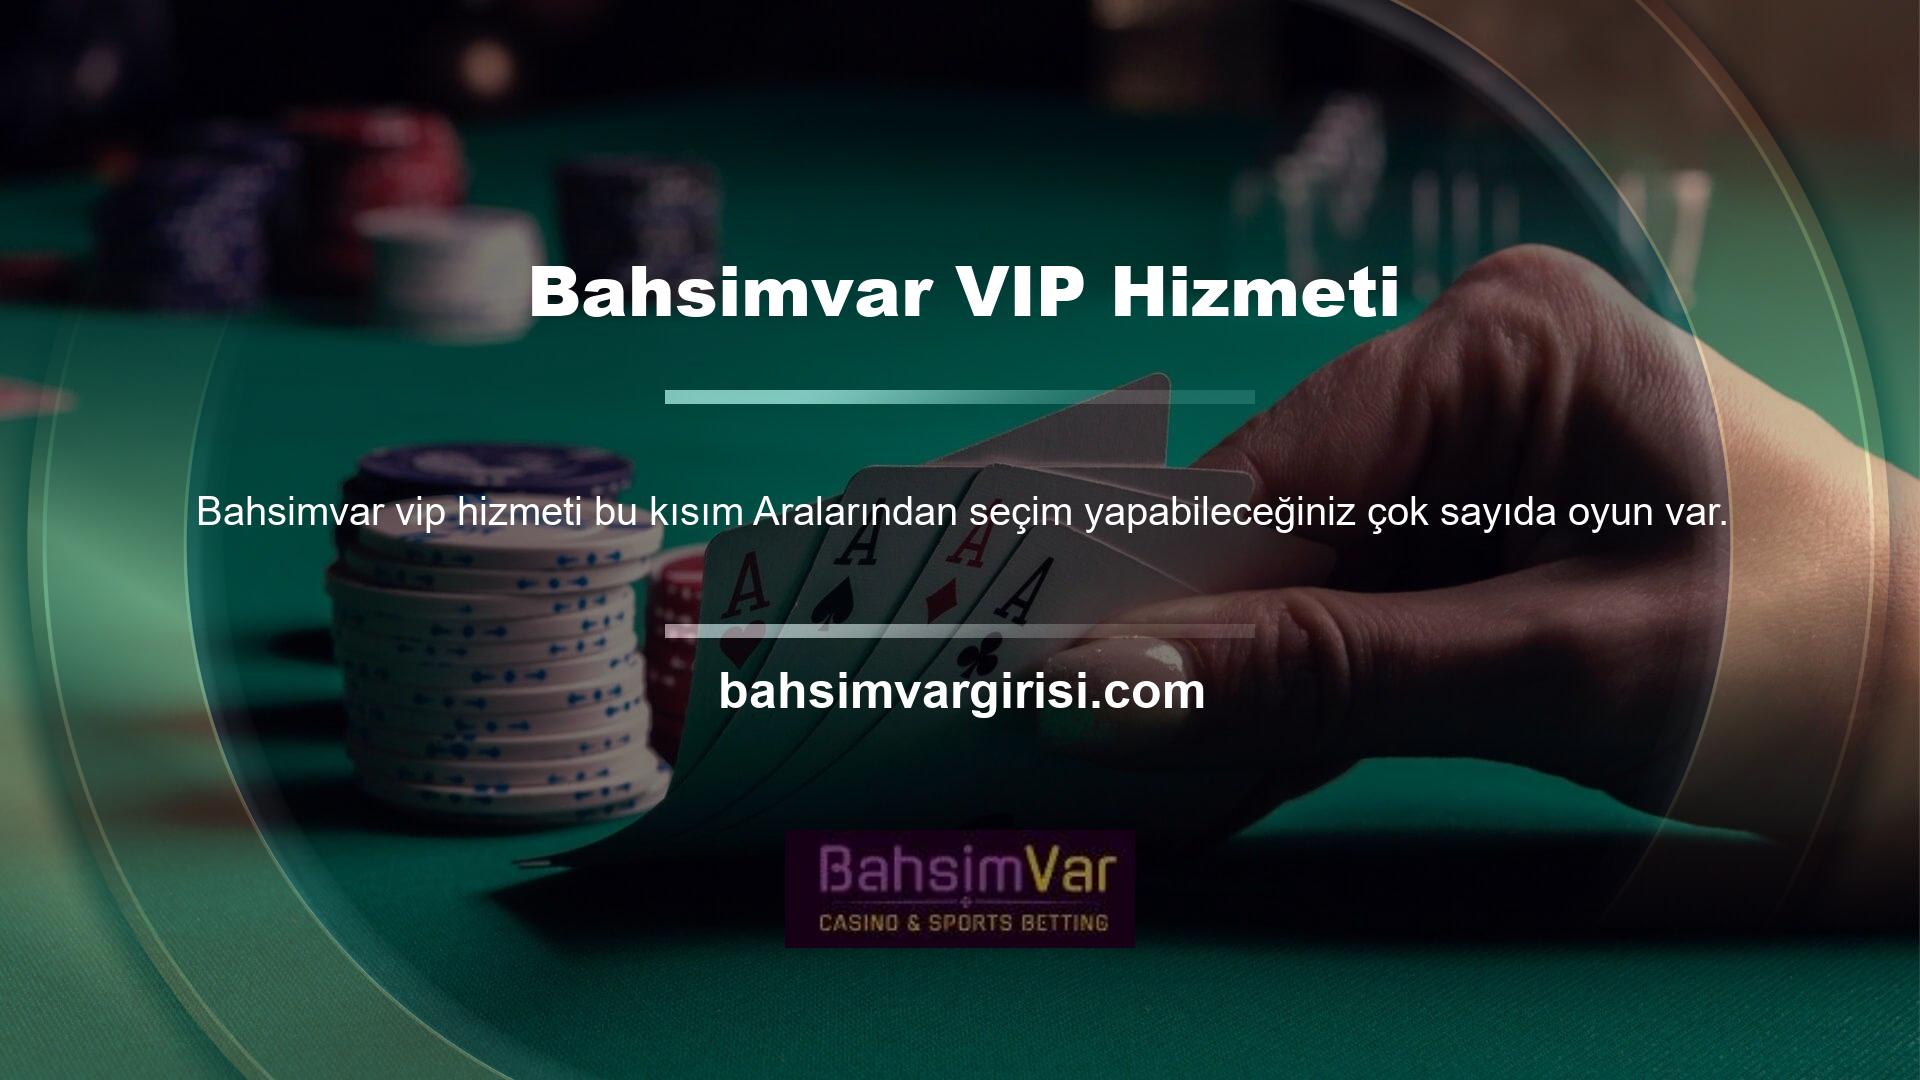 Siz değerli Bahsimvar üyelerini Bahsimvar pek çok sitede bulunmayan VIP hizmeti hakkında bilgilendirmek isteriz